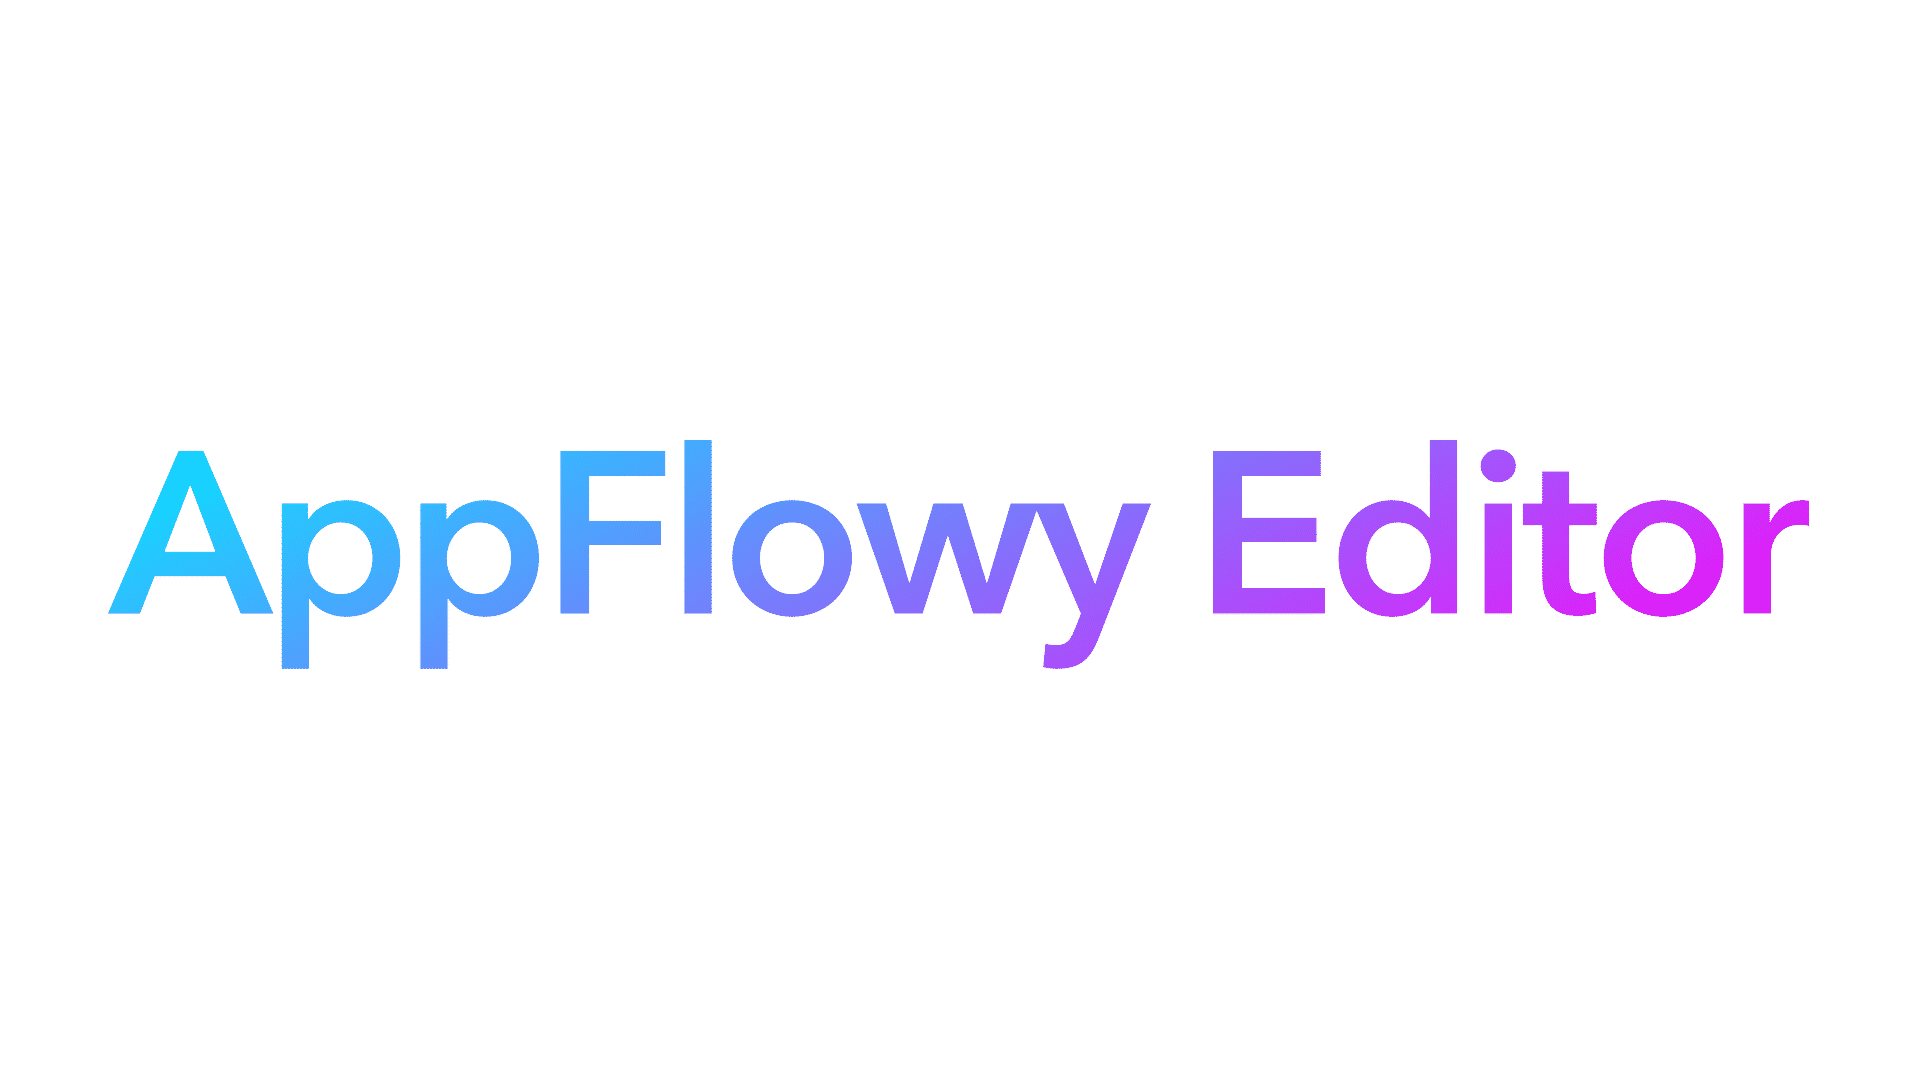 appflowy_editor.png